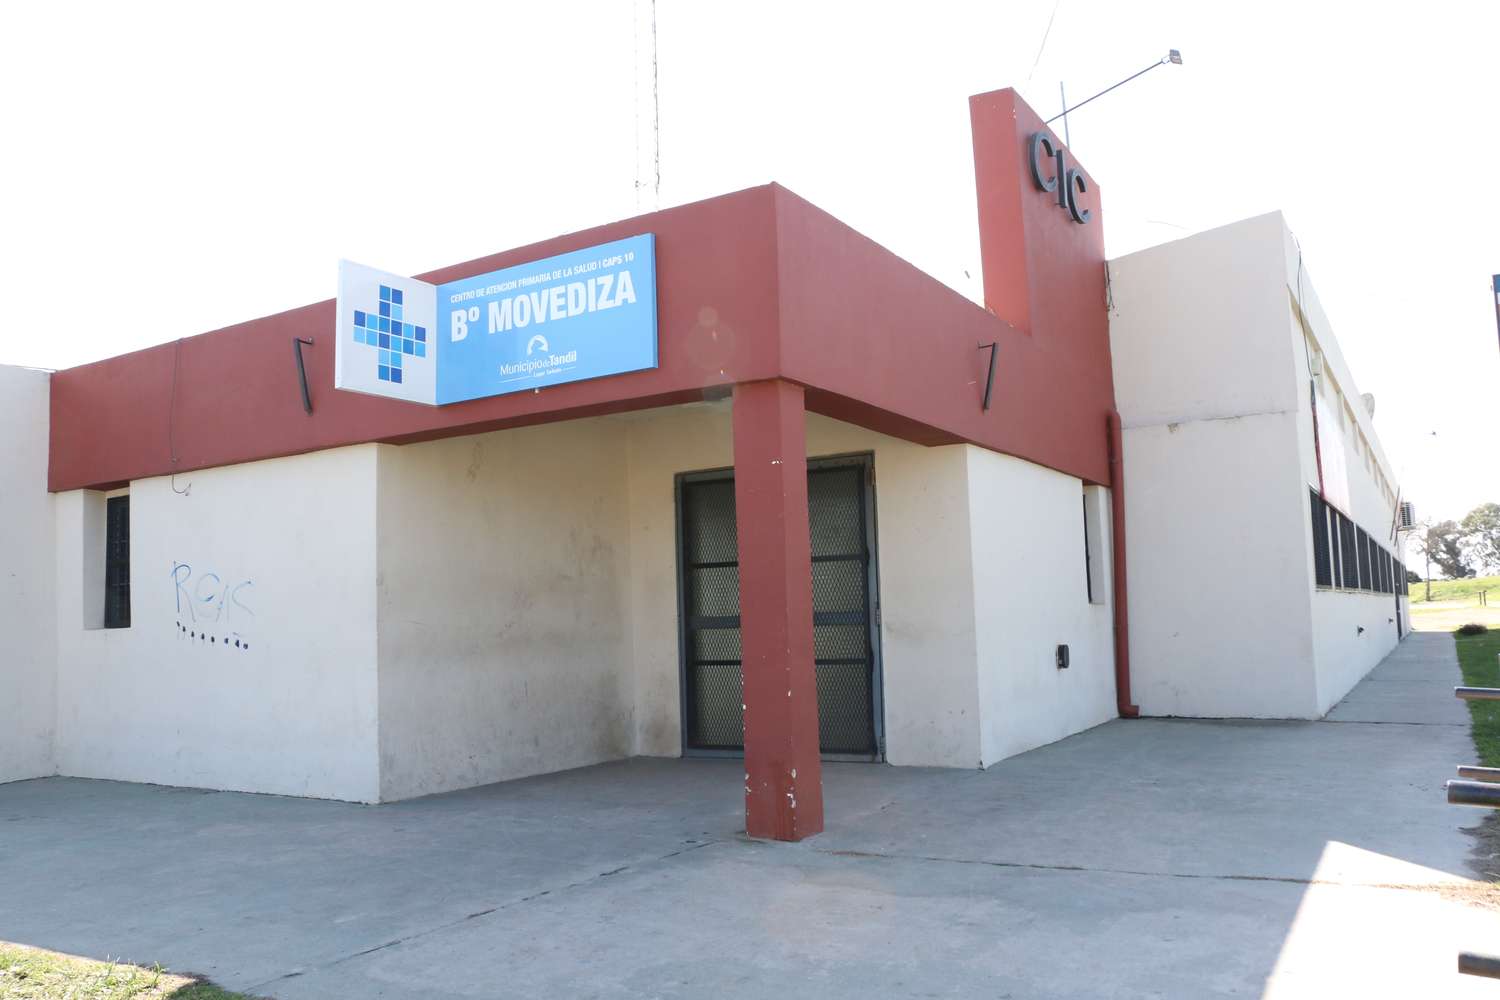 Vecinos de La Movediza pidieron al Municipio que disponga de más médicos en el centro de salud del barrio